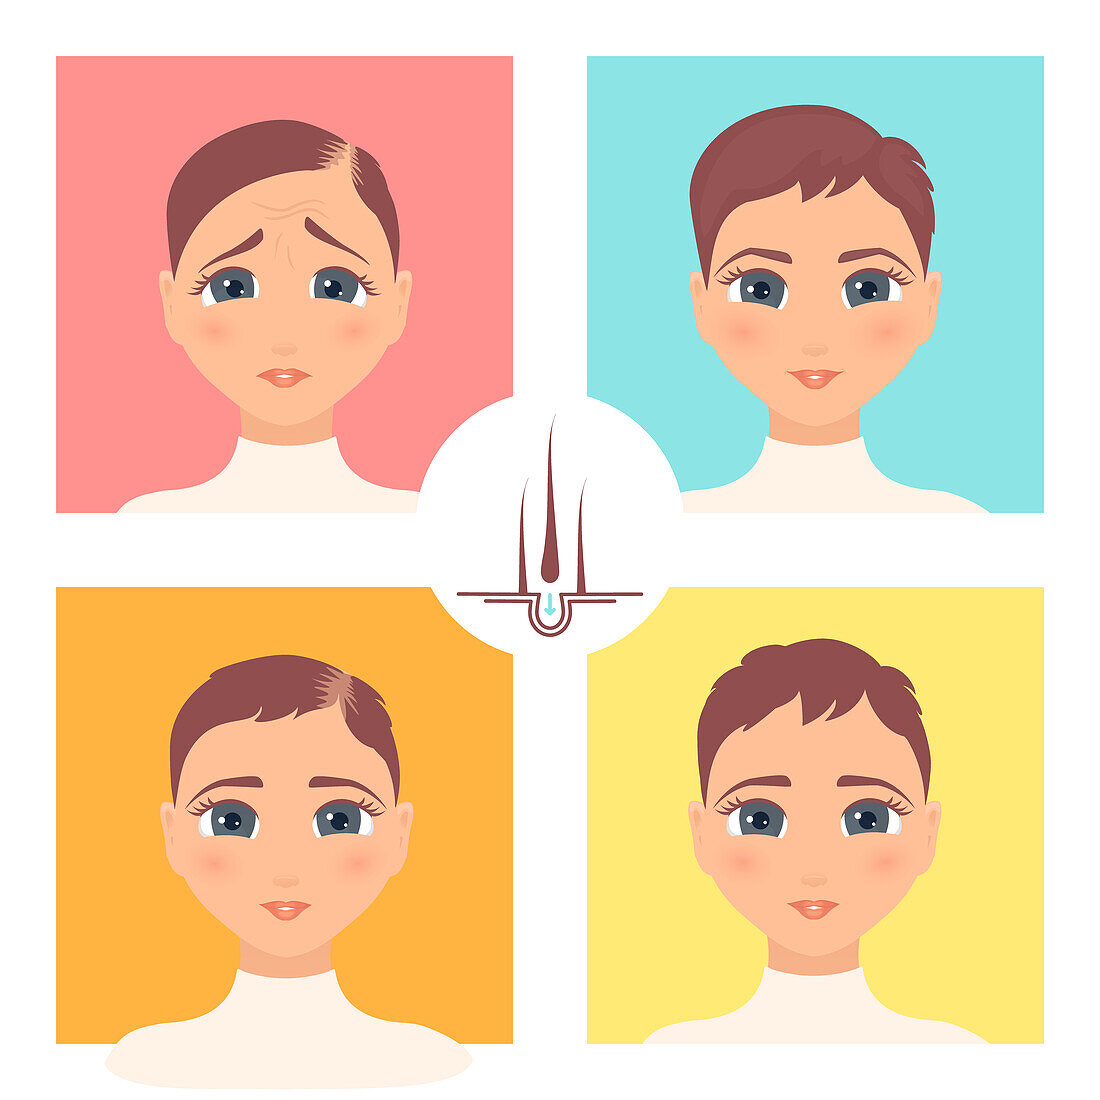 Hair transplantation surgery result in women, illustration